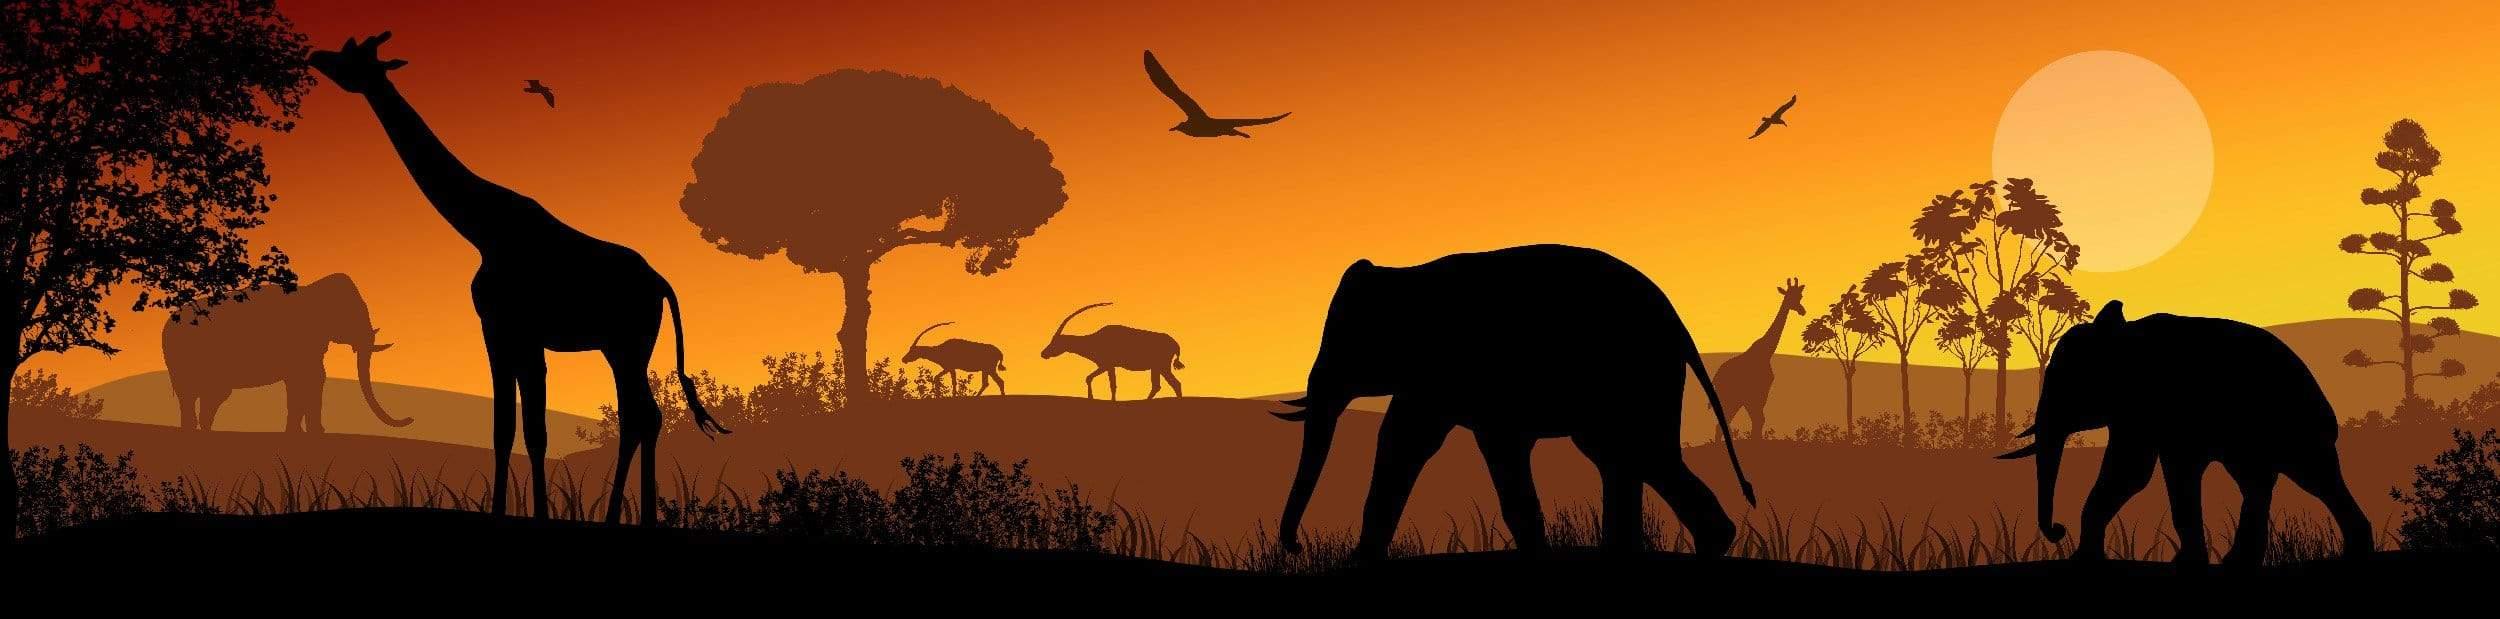 Animals at sunset Panorama